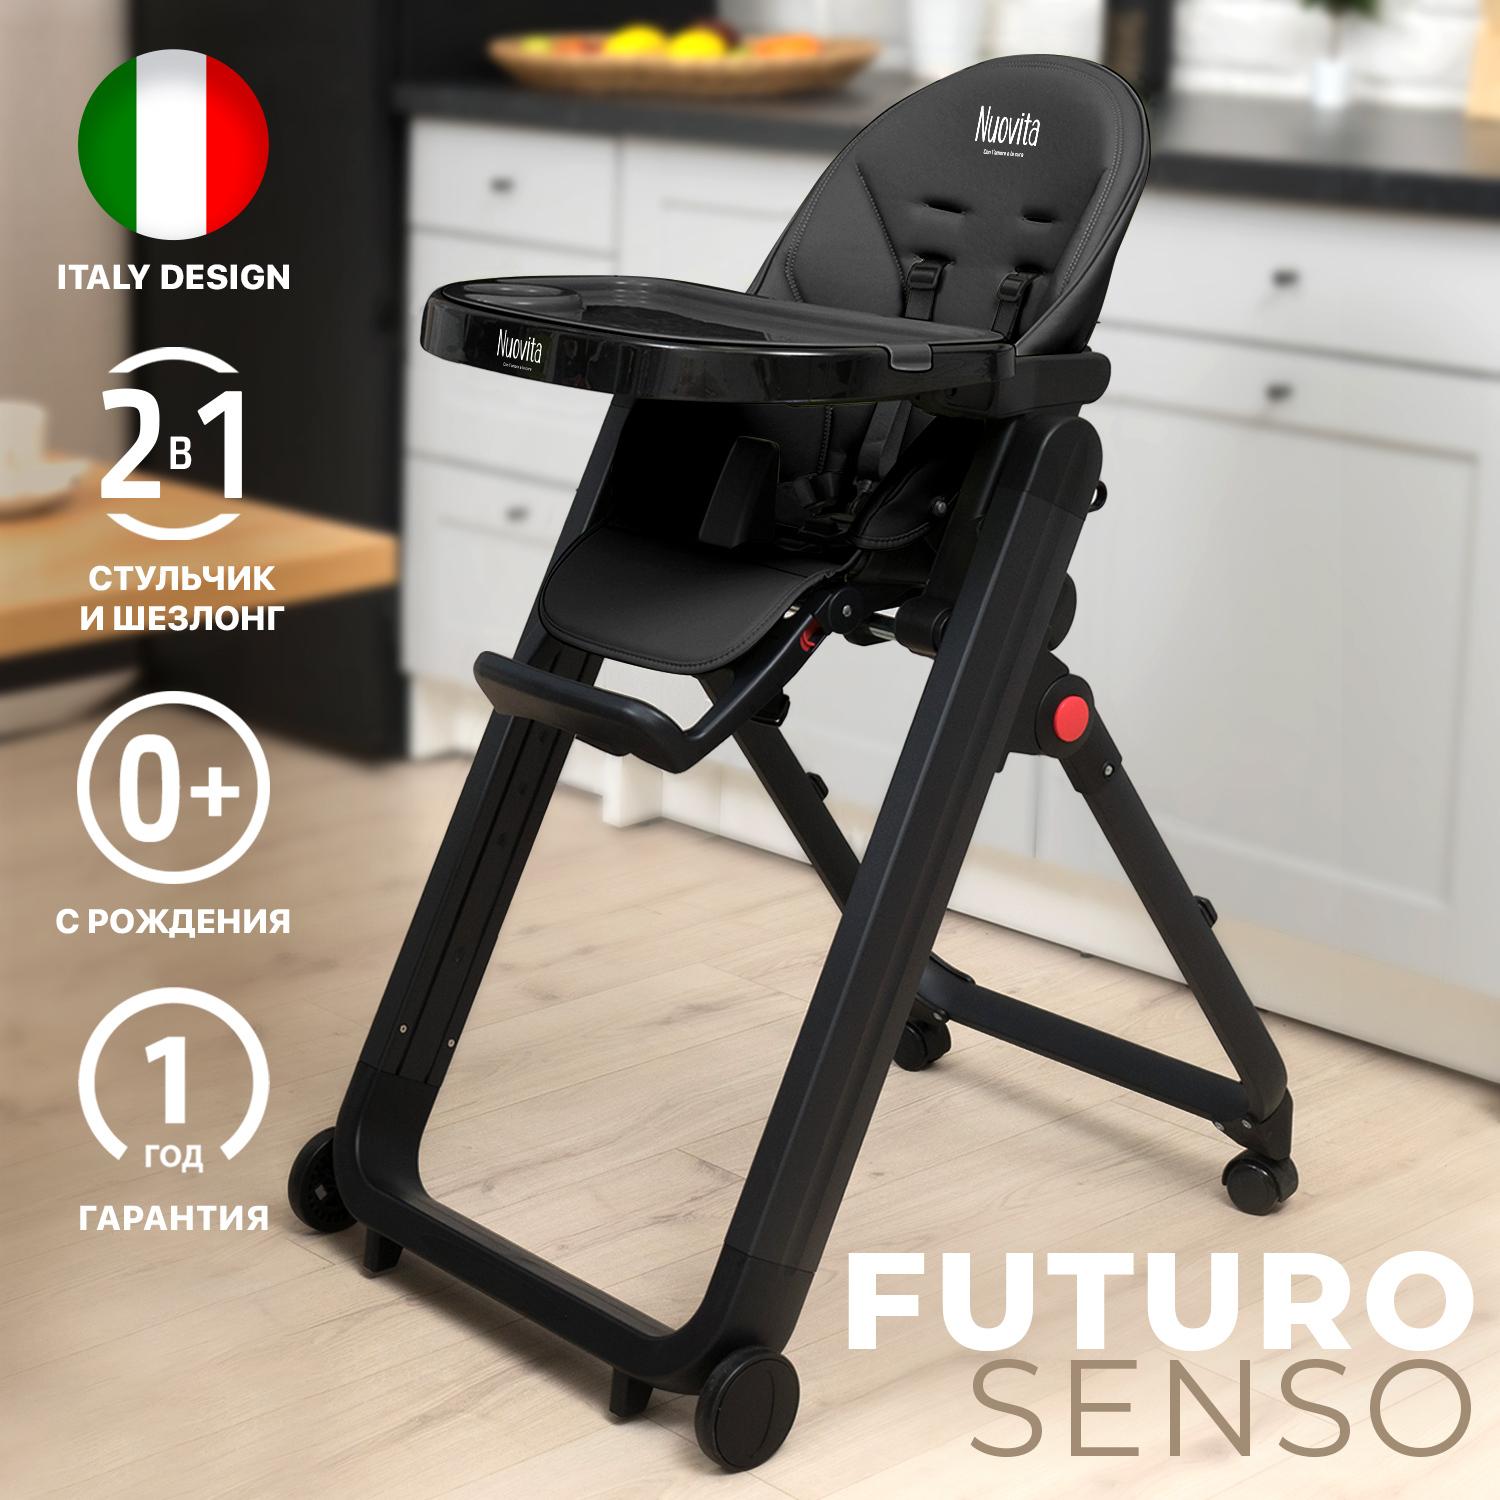 Стул для кормления детский Nuovita Futuro Senso Nero 2в1, шезлонг, складной, растущий стульчик для ребенка, от 6 месяцев до 3 лет, до 15 кг, Черный.